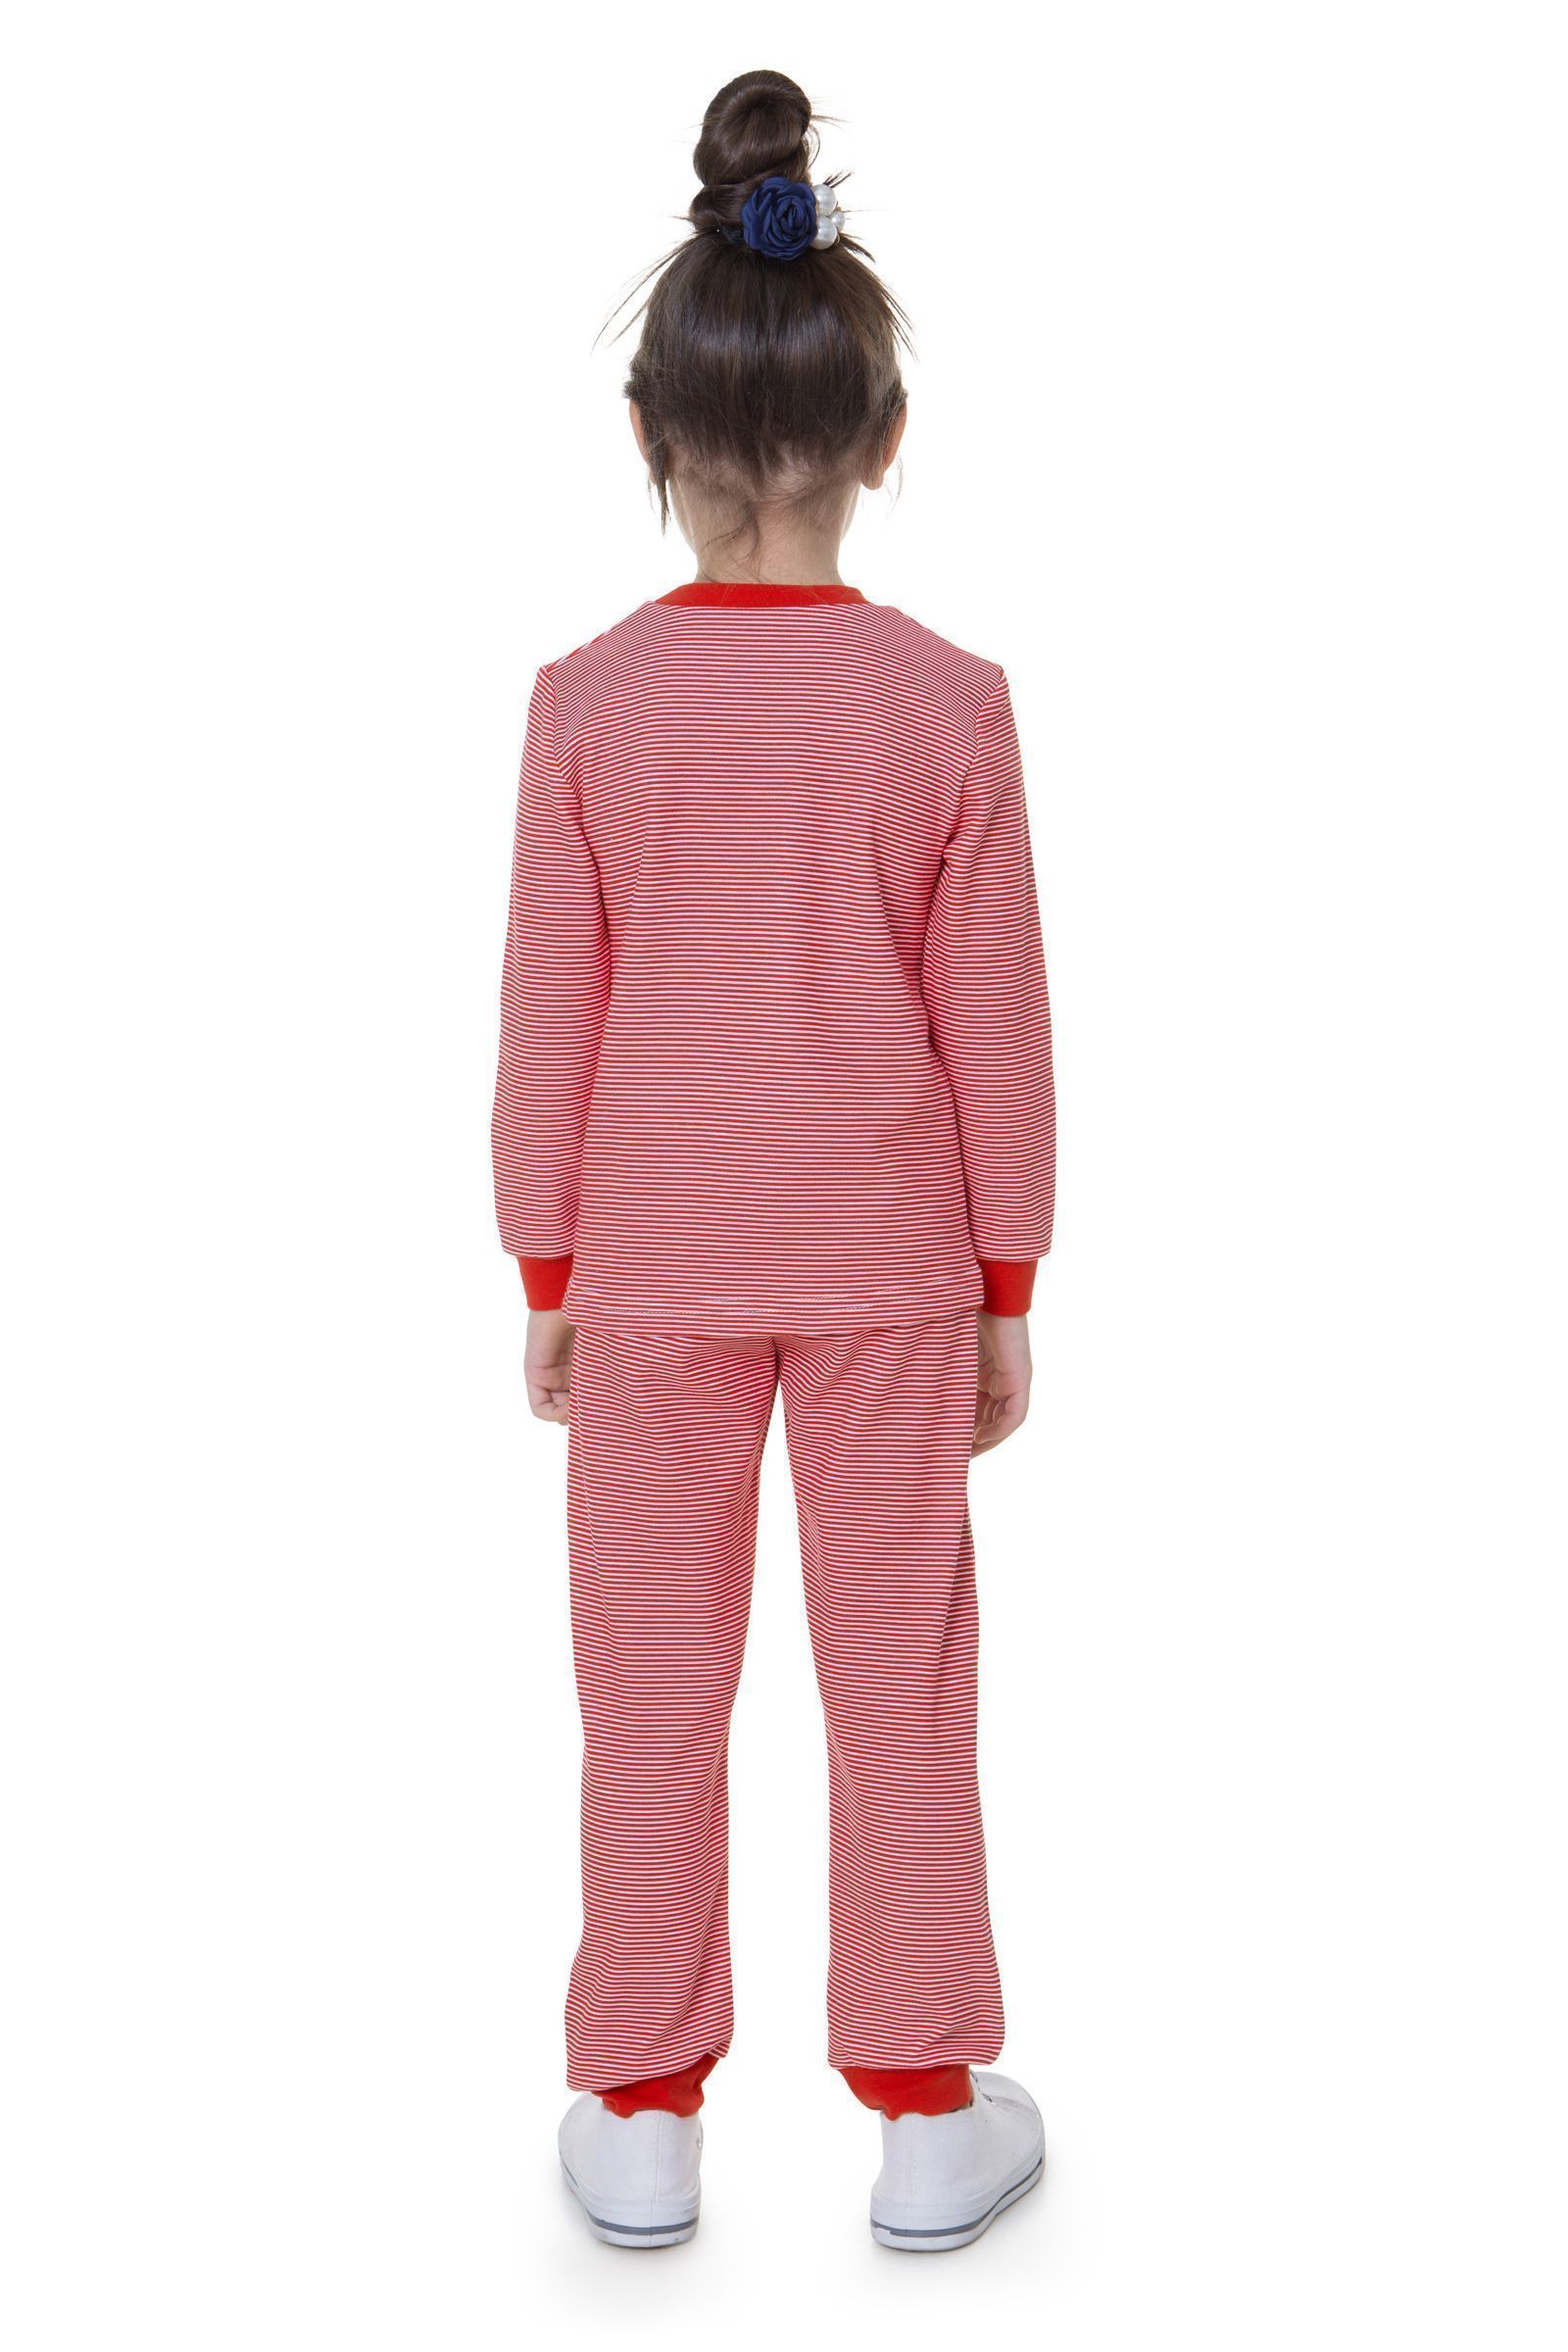 Пижама-ПЖ01-3462 оптом от производителя детской одежды 'Алёна'